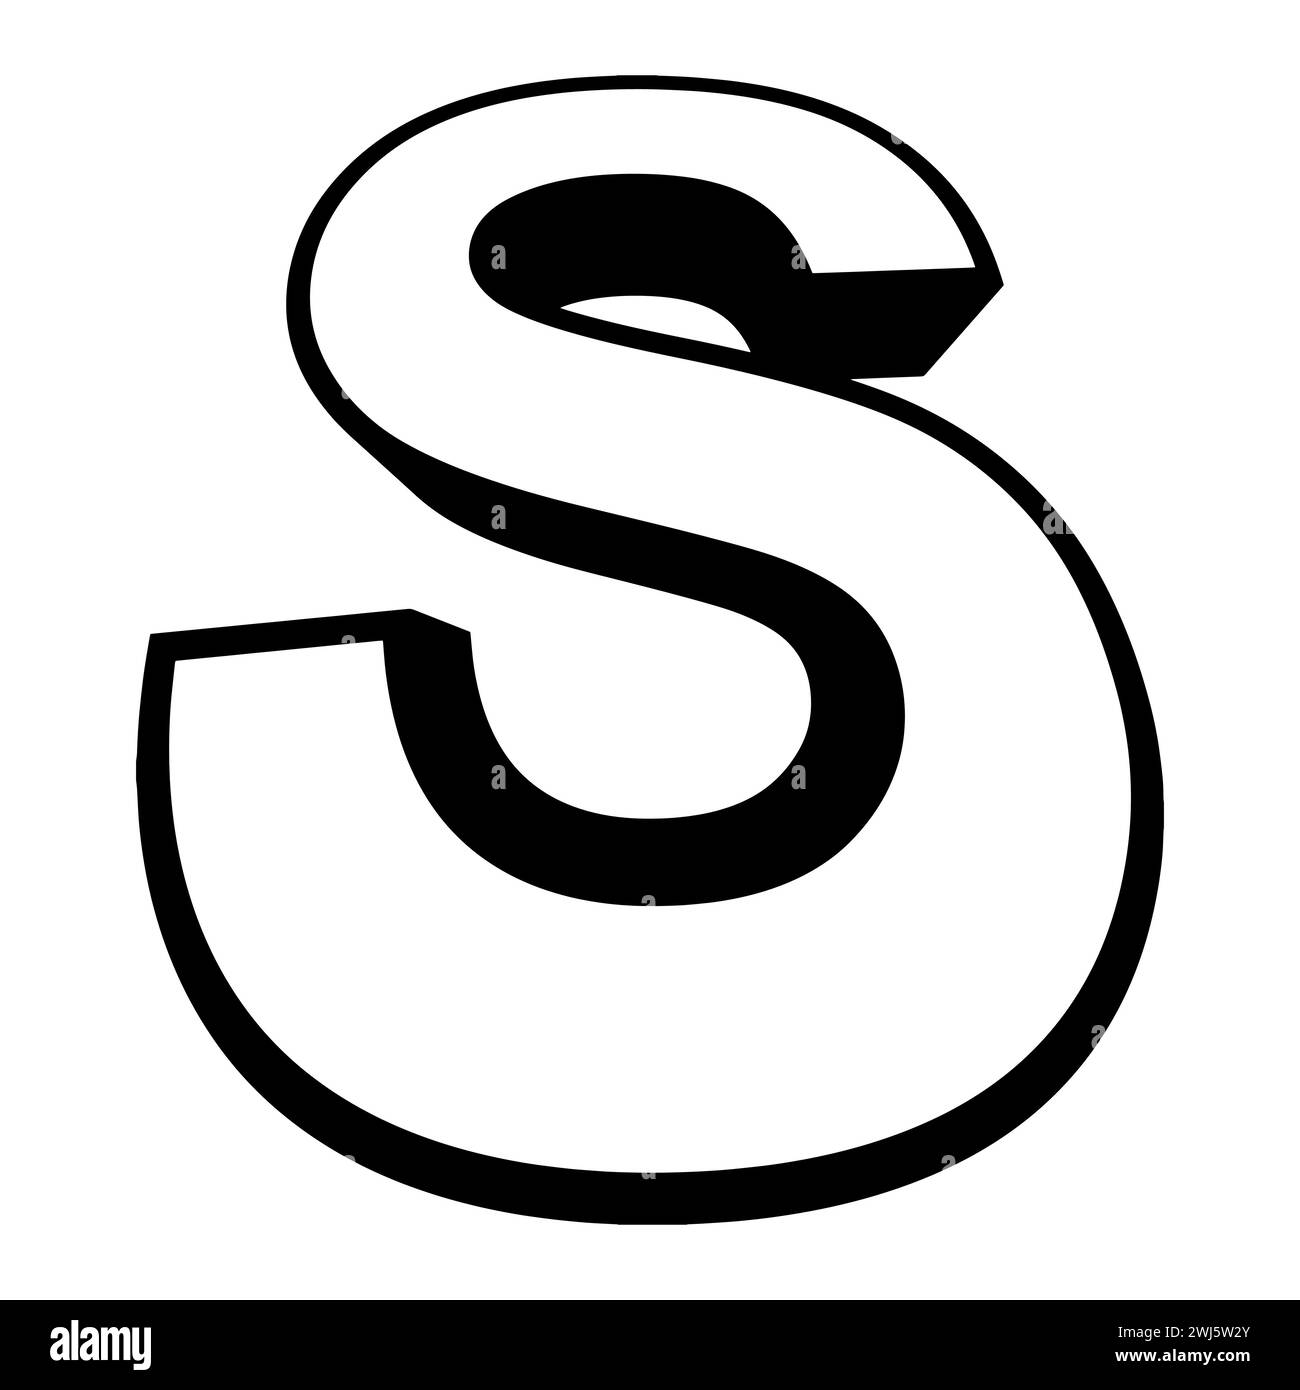 Logo letter s, tall slender font letter s perspective height Stock Vector